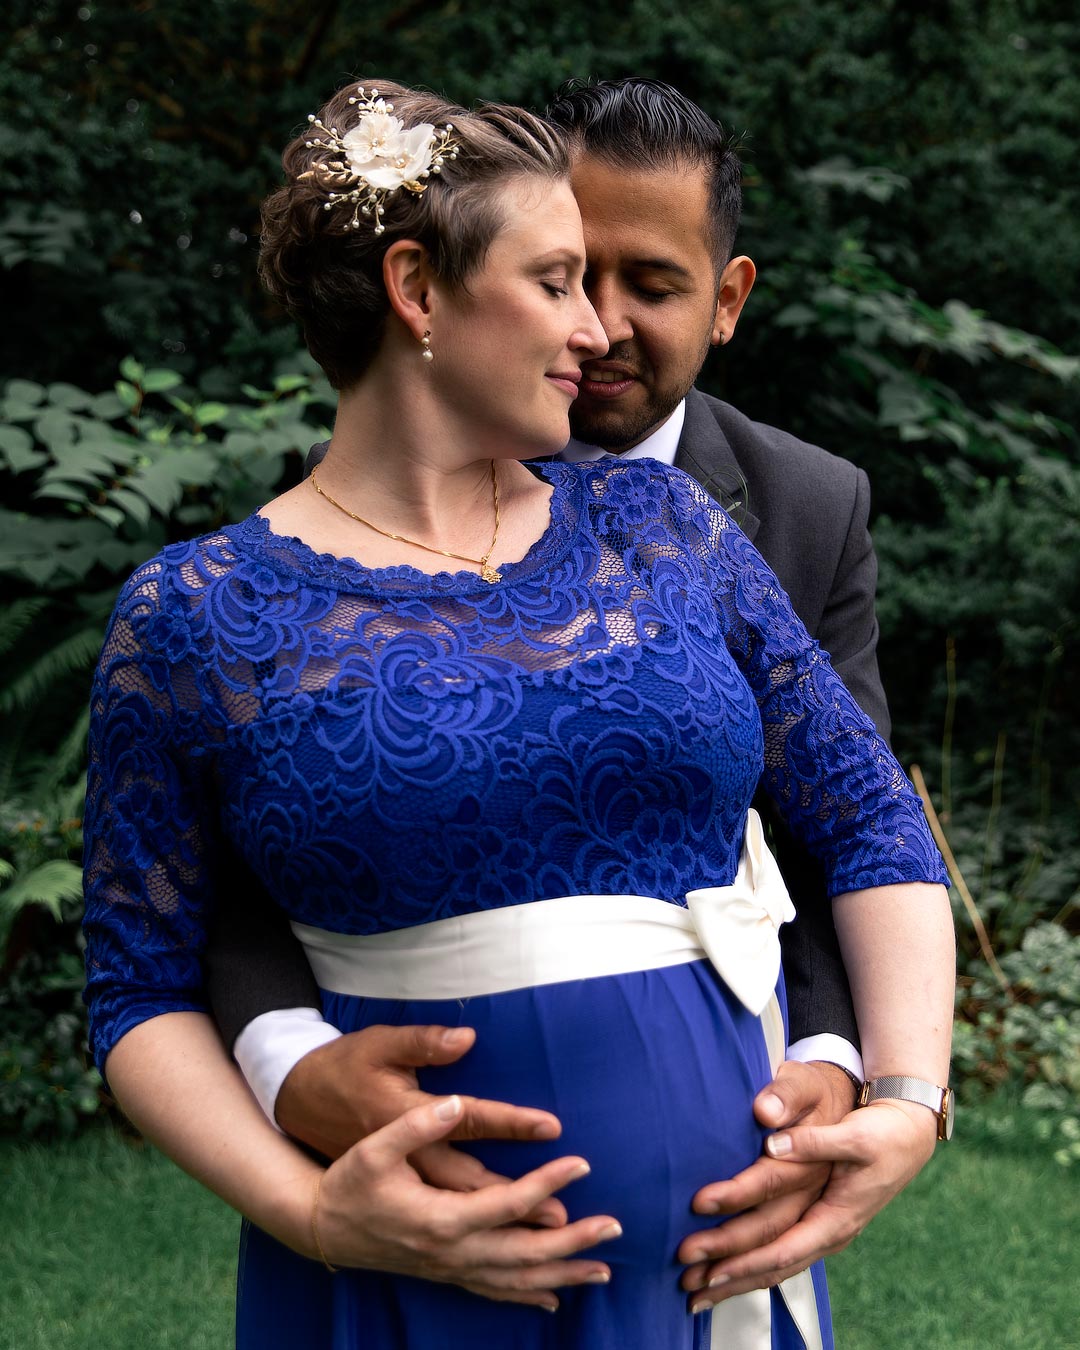 Hochzeitsfoto von schwangerer Braut und Bräutigam